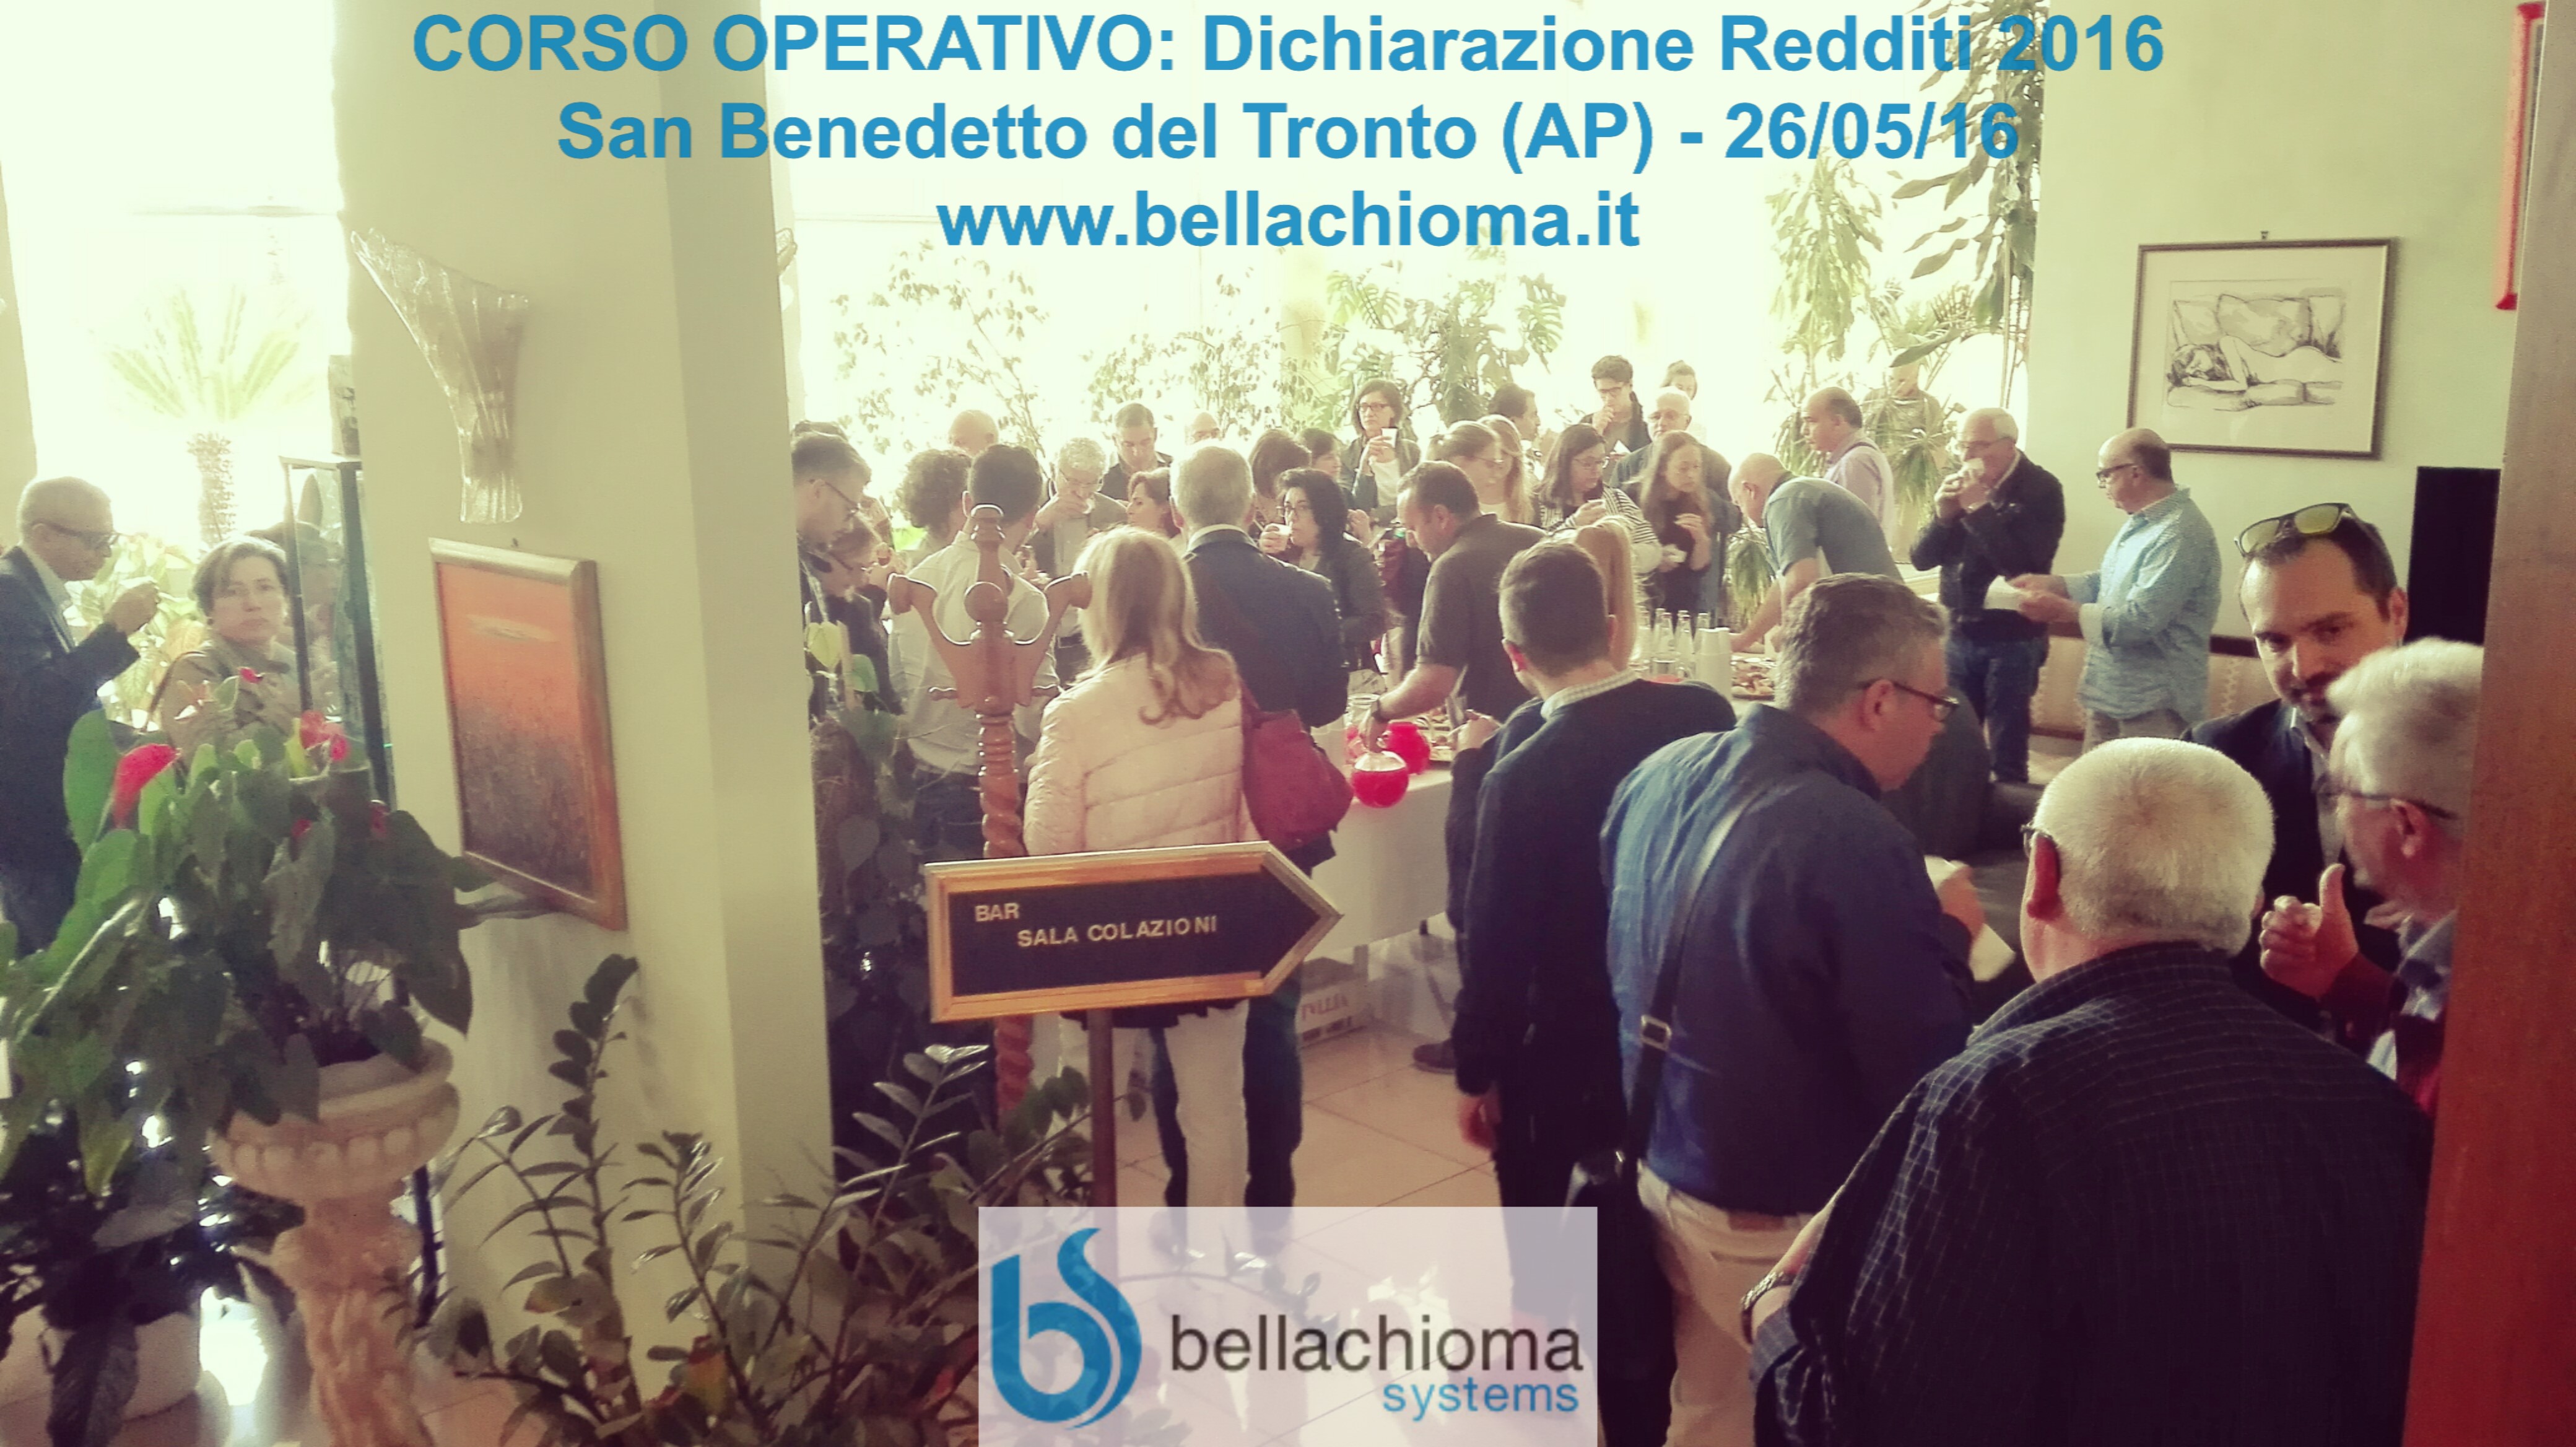 Corso Operativo Redditi 2016 - Bellachioma Systems Srl